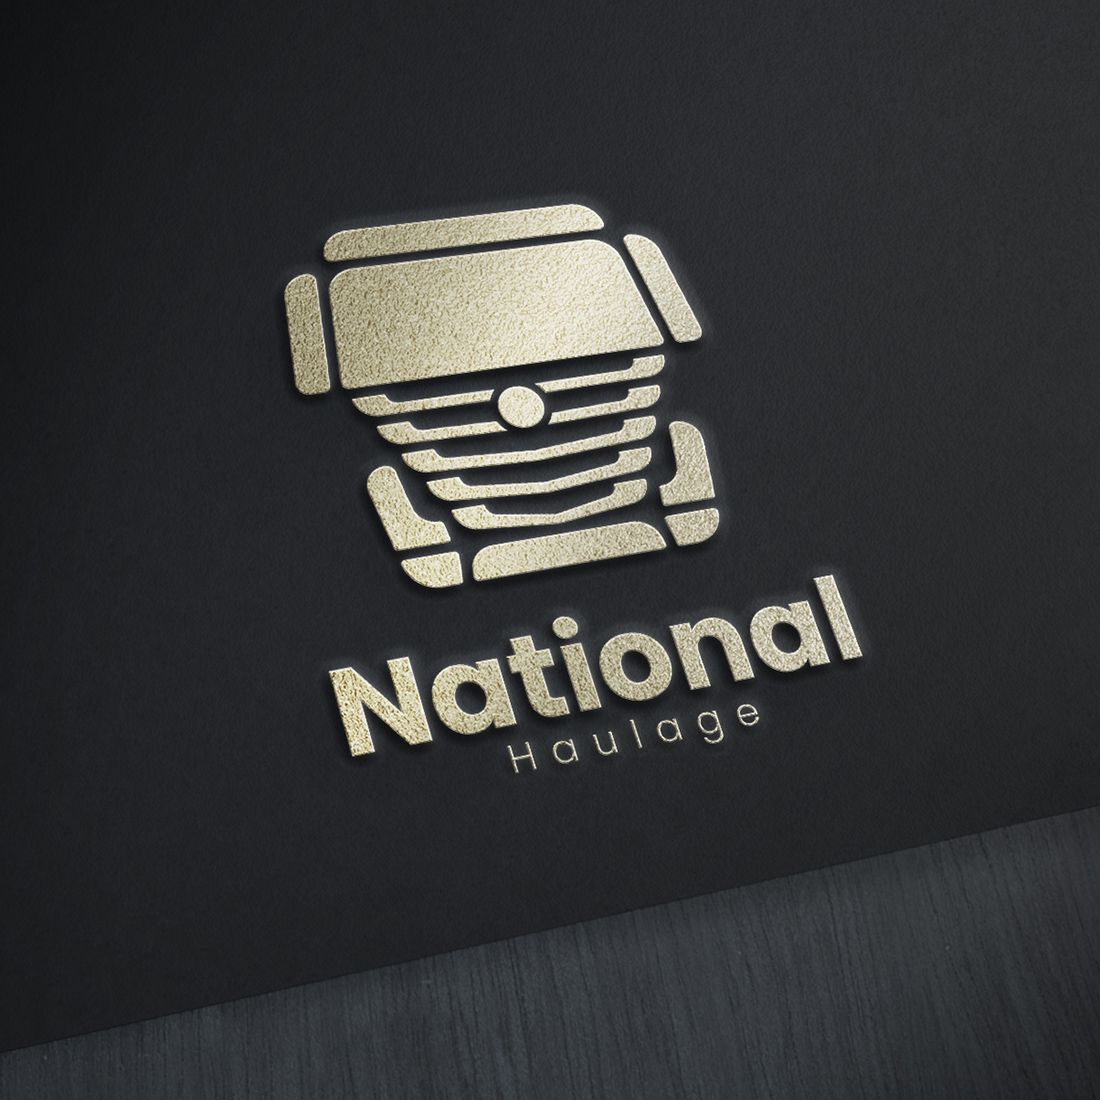 National Haulage Logo mockup example with black background.